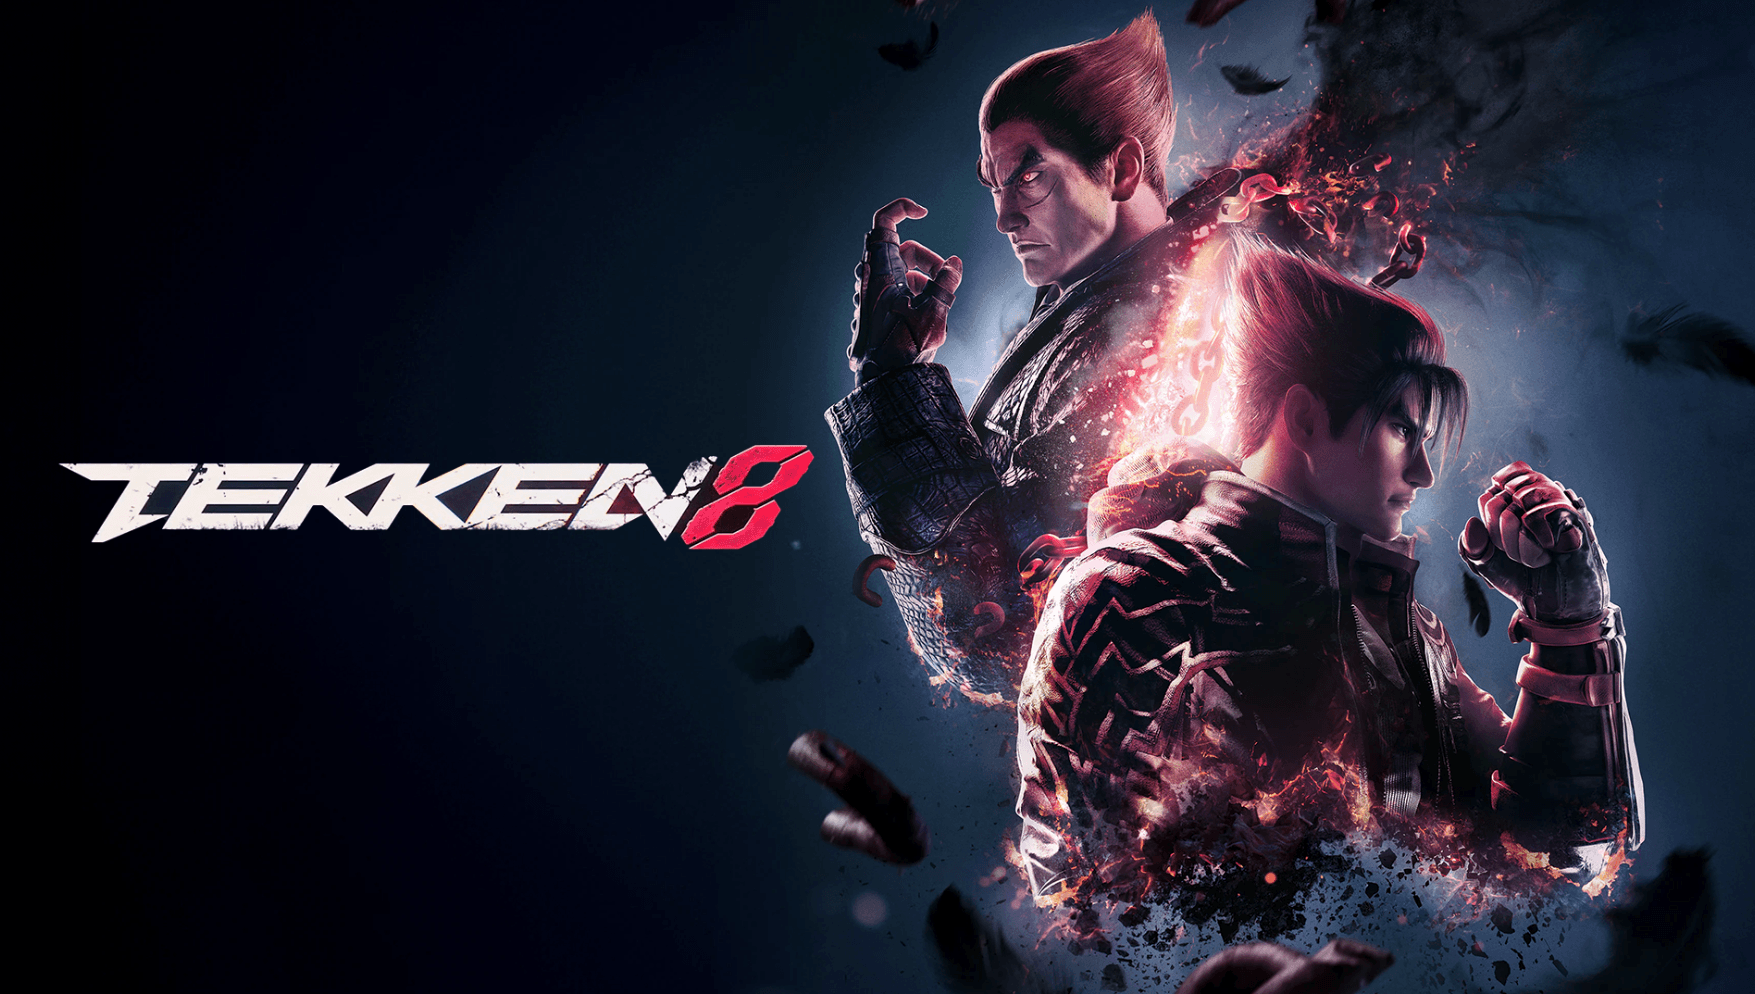 Tekken ขายเกมได้ 57 ล้านชุดแล้ว !!